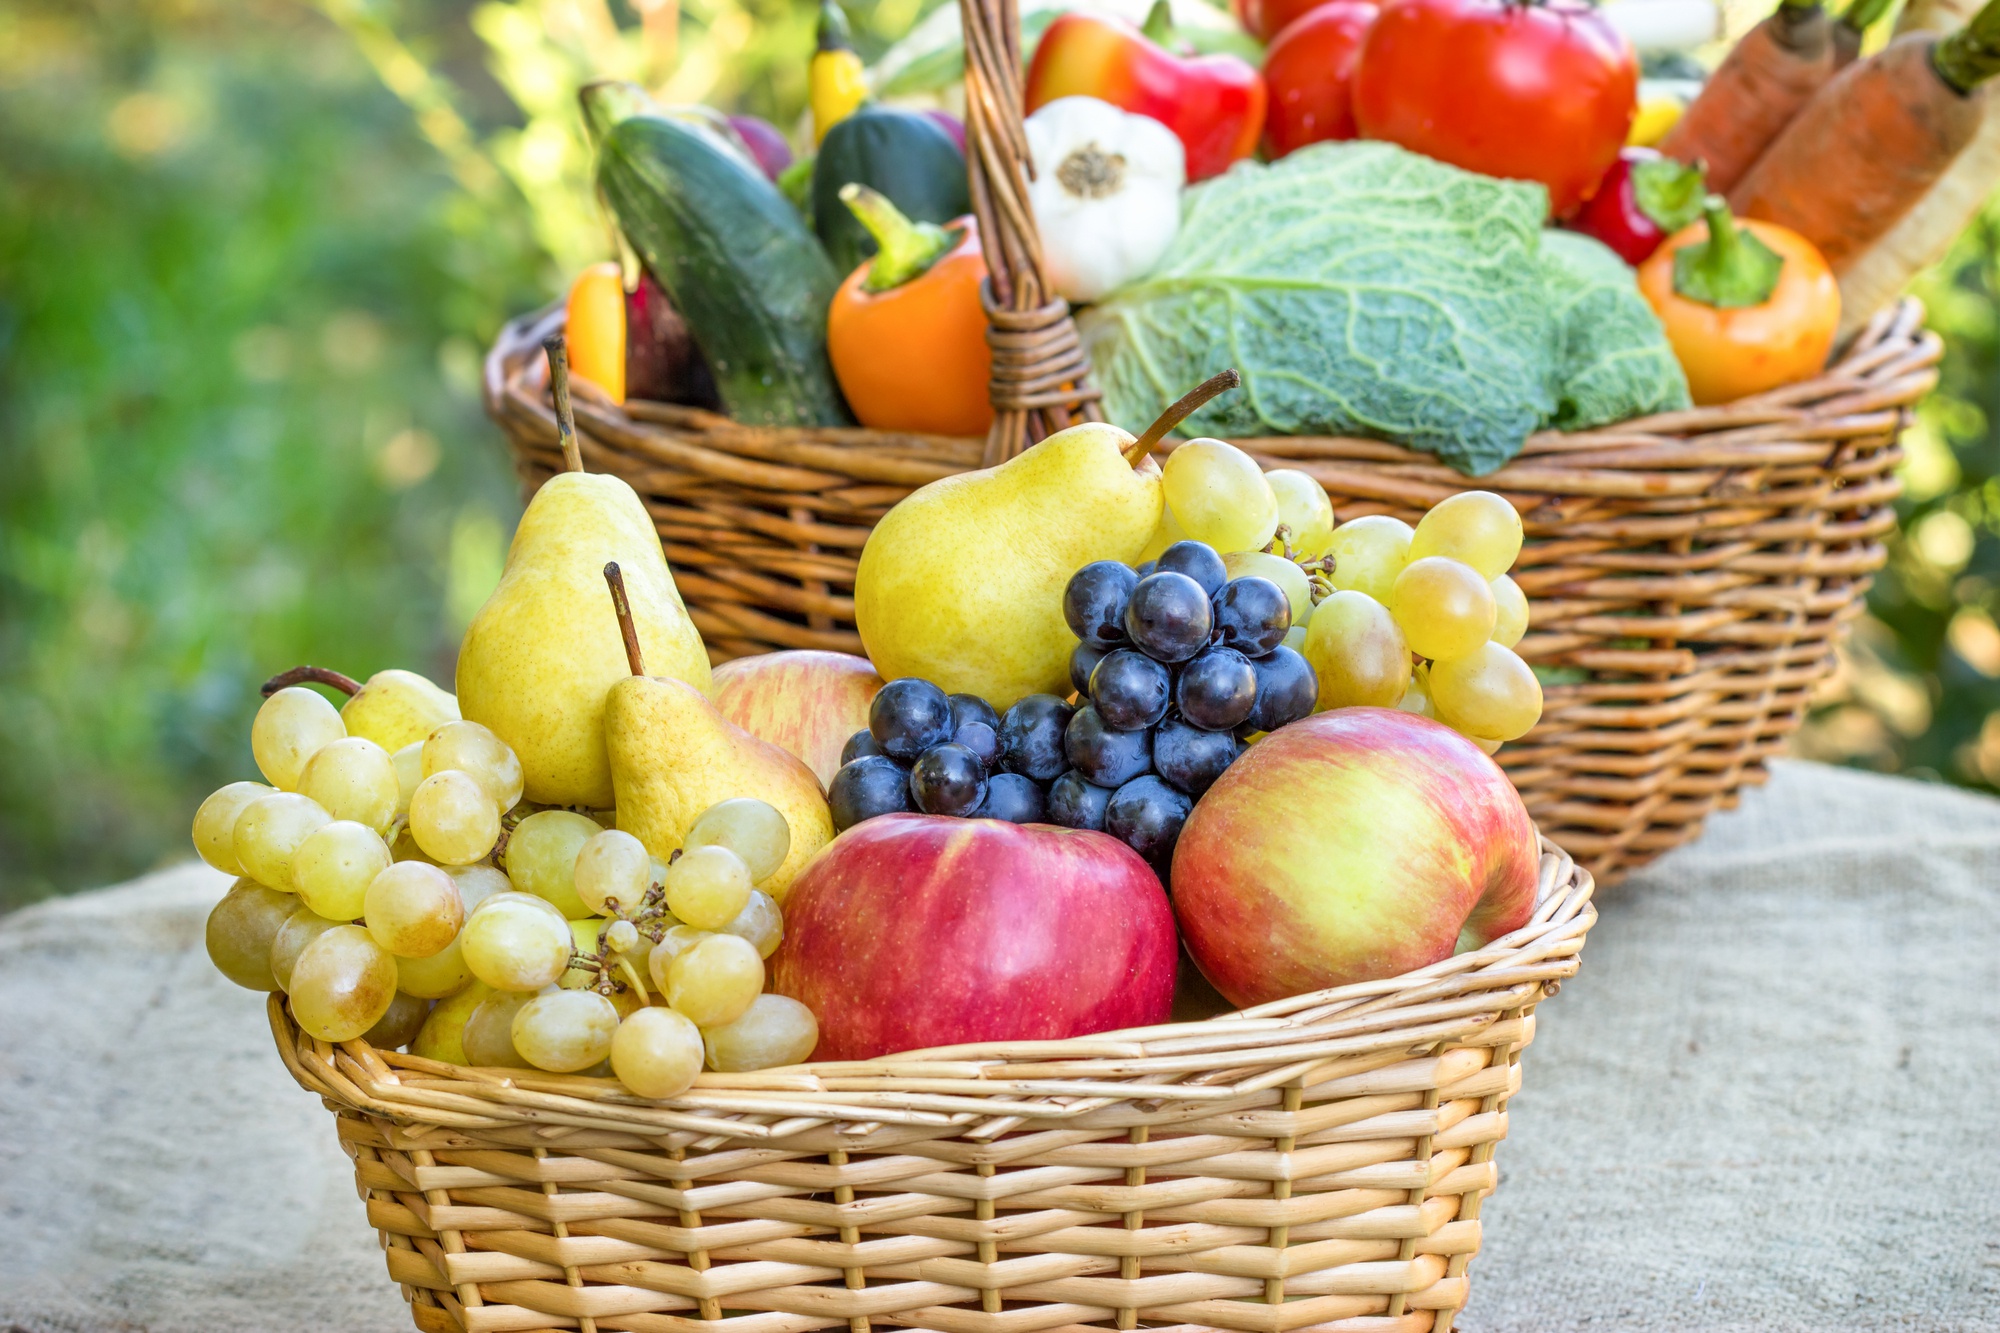 fruits & vegetables, food, apple, basket, grapes, pear, vegetable, fruits